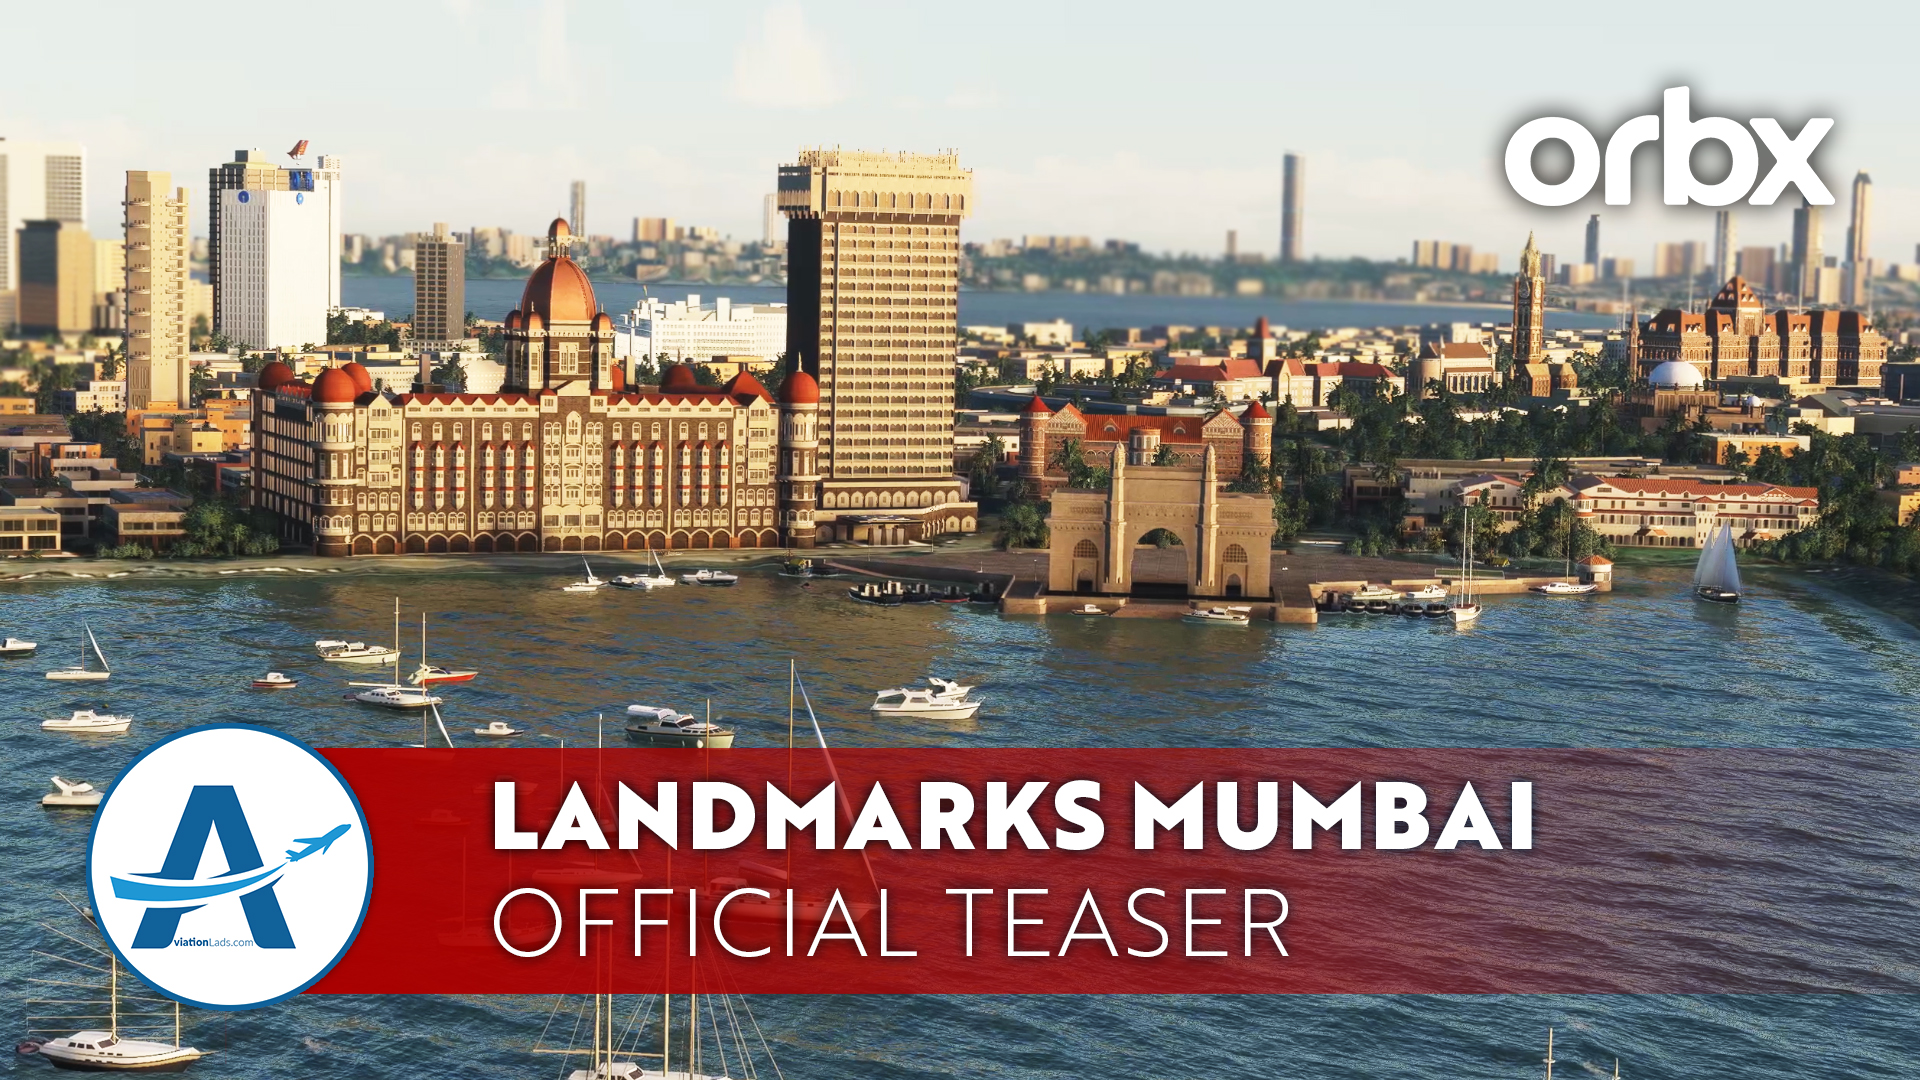 [TEASER] Orbx Landmarks Mumbai